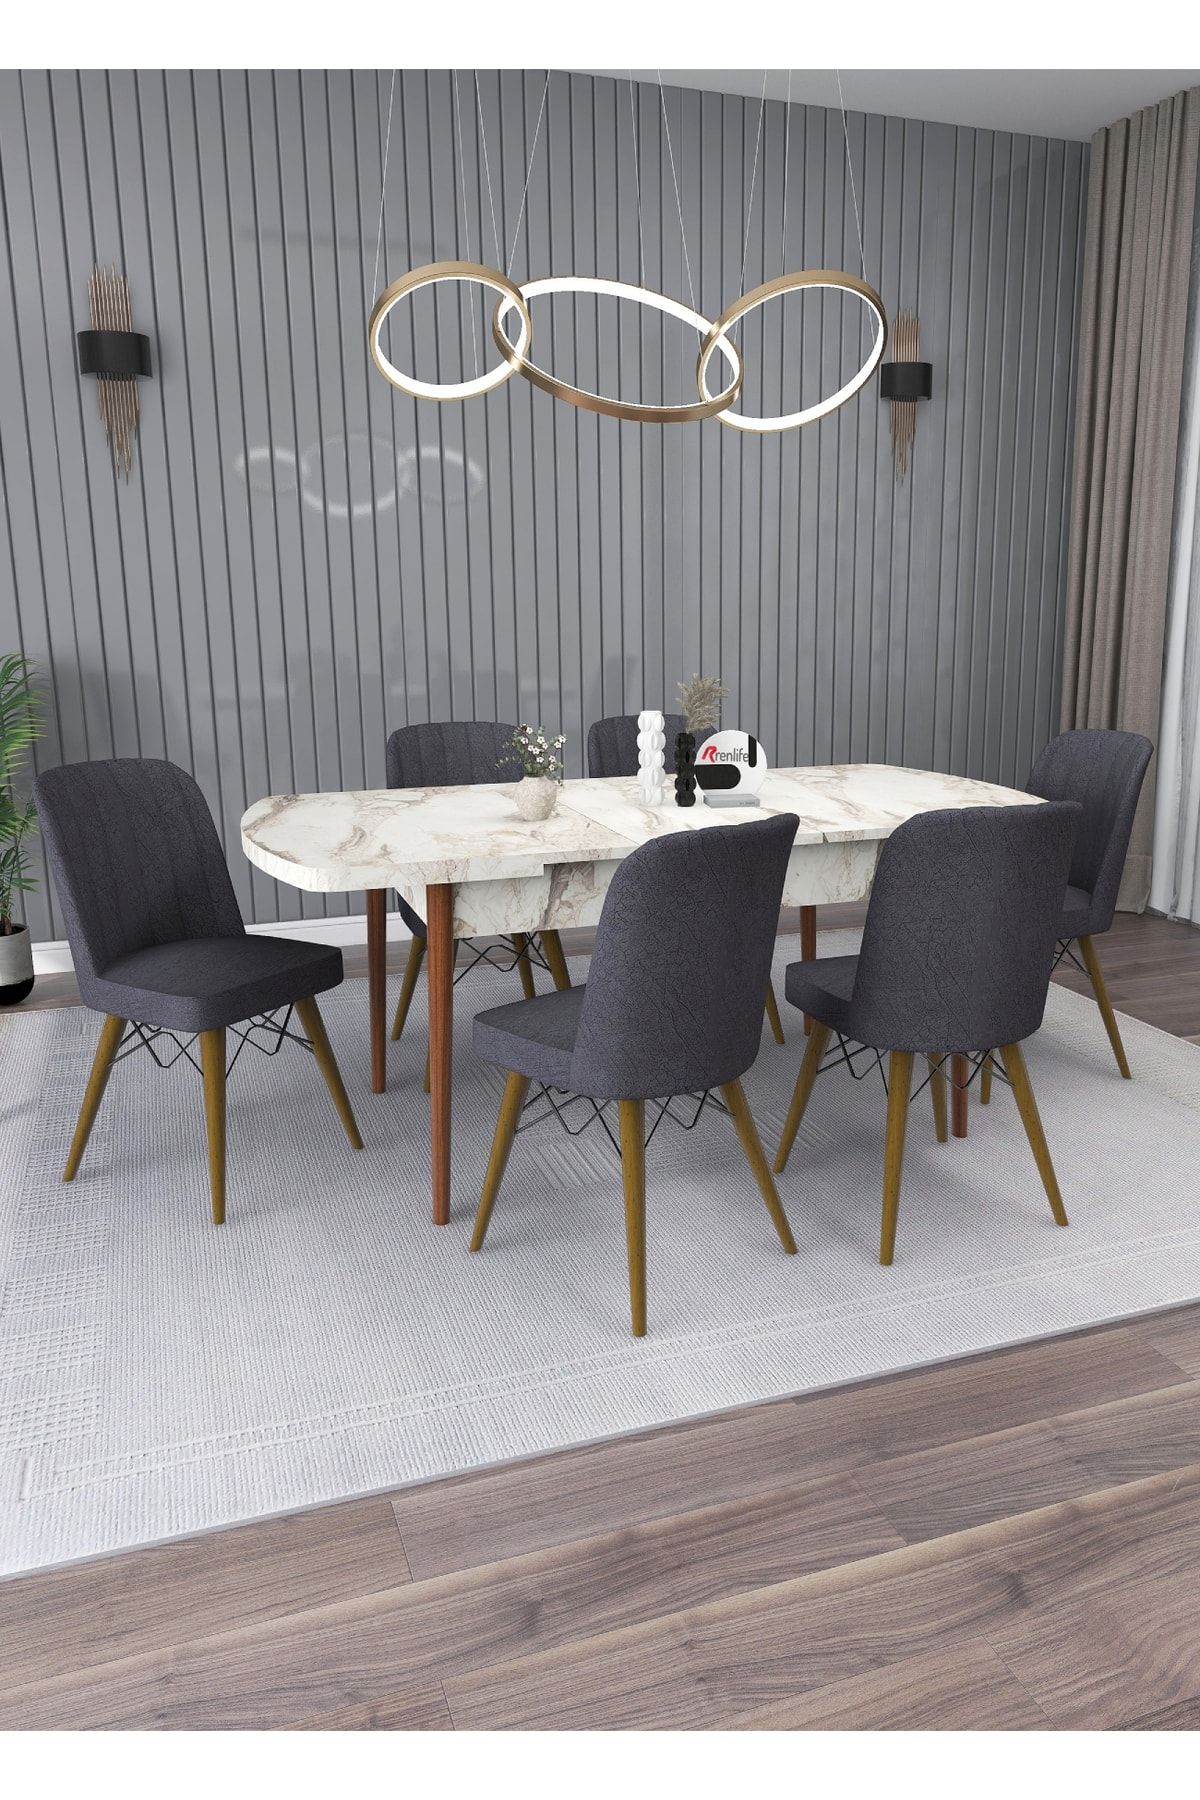 Renlife Yemek Masası Masa Sandalye Takımı Salon Masası Açılabilir 6 Kişilik (EFES-KOYU GRİ SANDALYE)